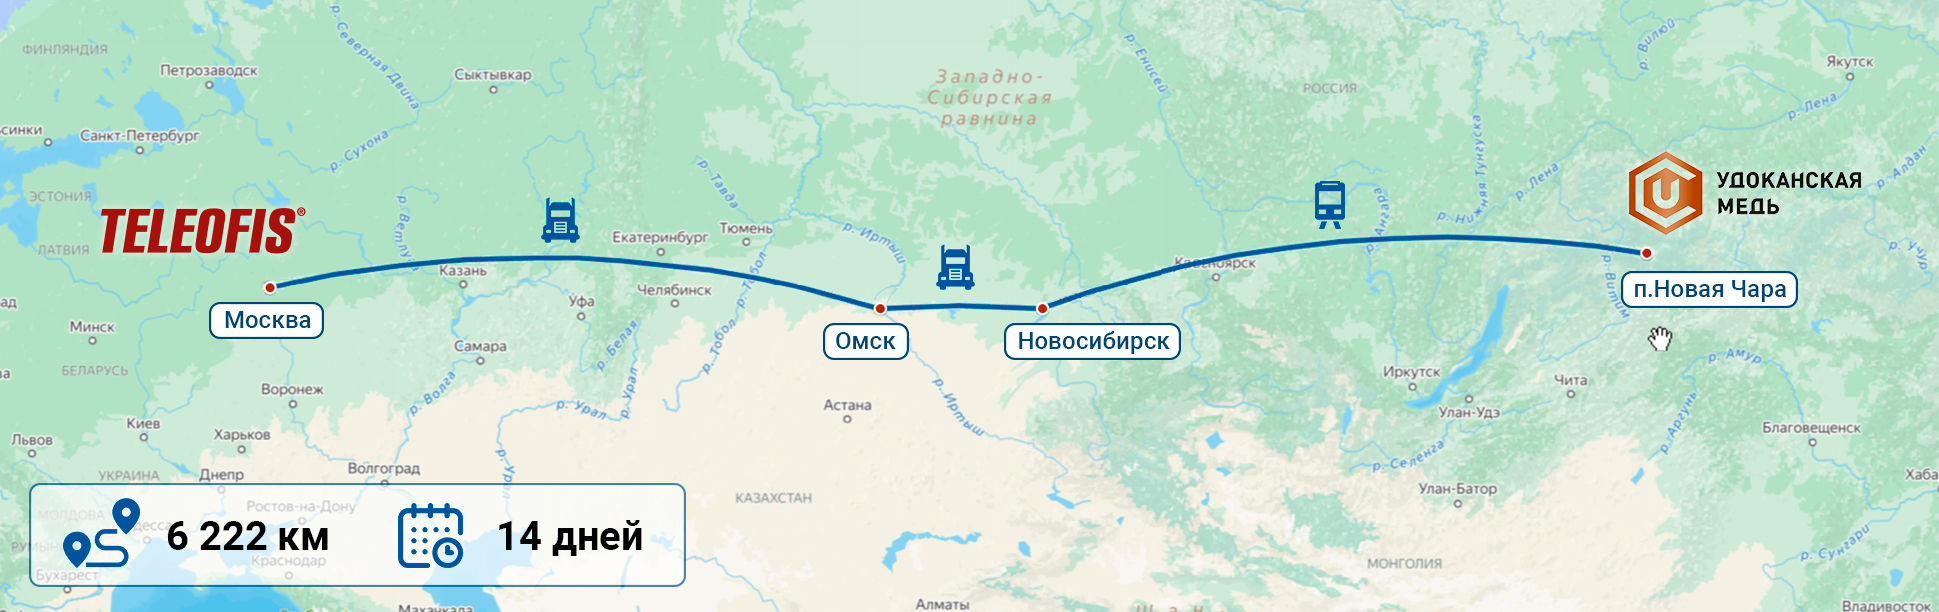 Промышленные терминалы маршрут доставки из Москвы в регионы